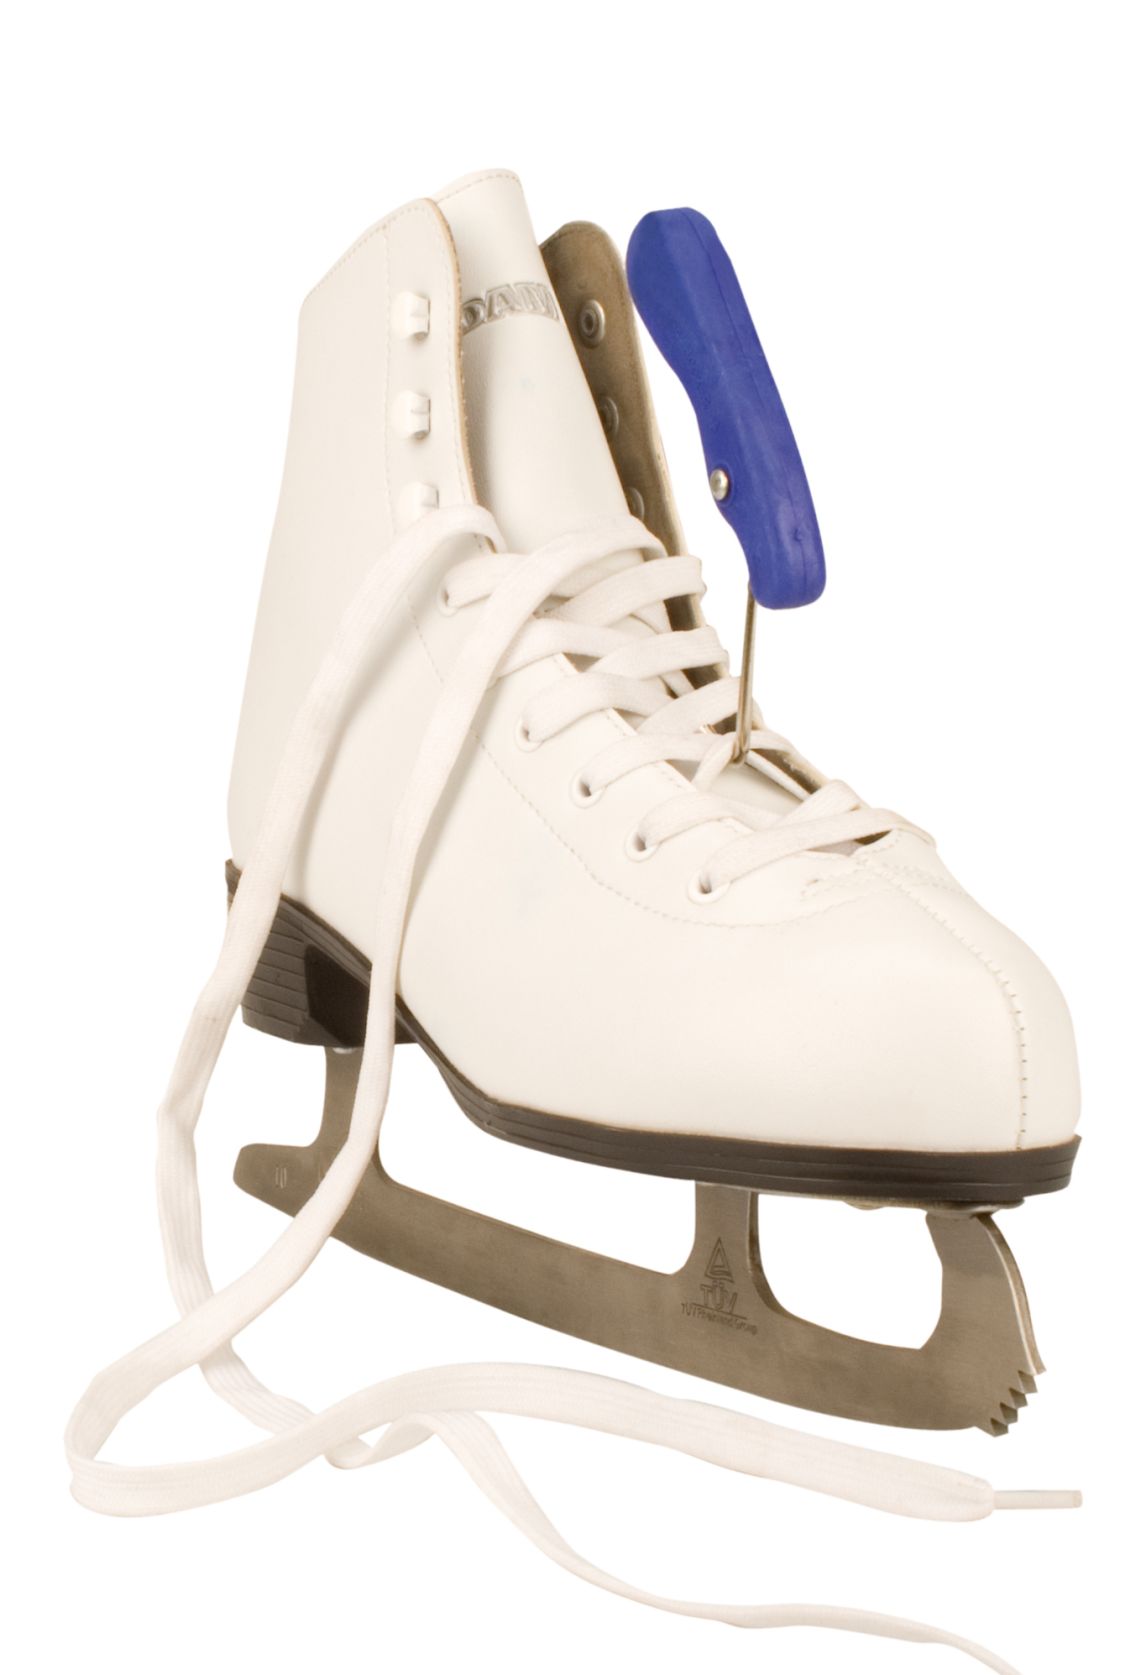 Schreuders Ganci per lacci sportivi, ganci per lacci per scarpe hockey su ghiaccio pattinaggio pattini da ghiaccio